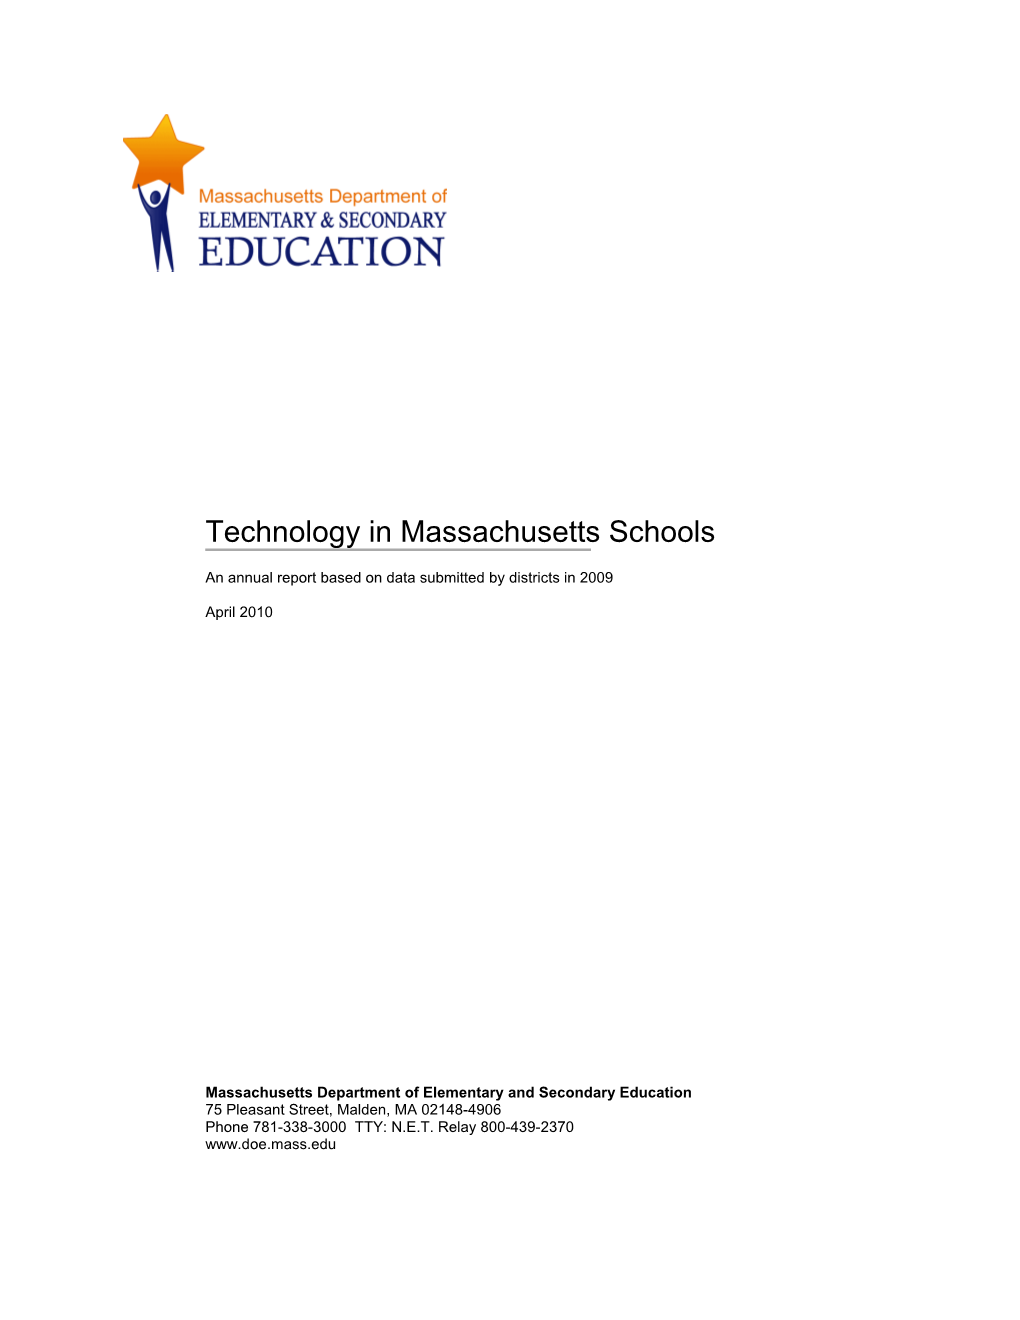 Technology in Massachusetts Schools 2007-2008